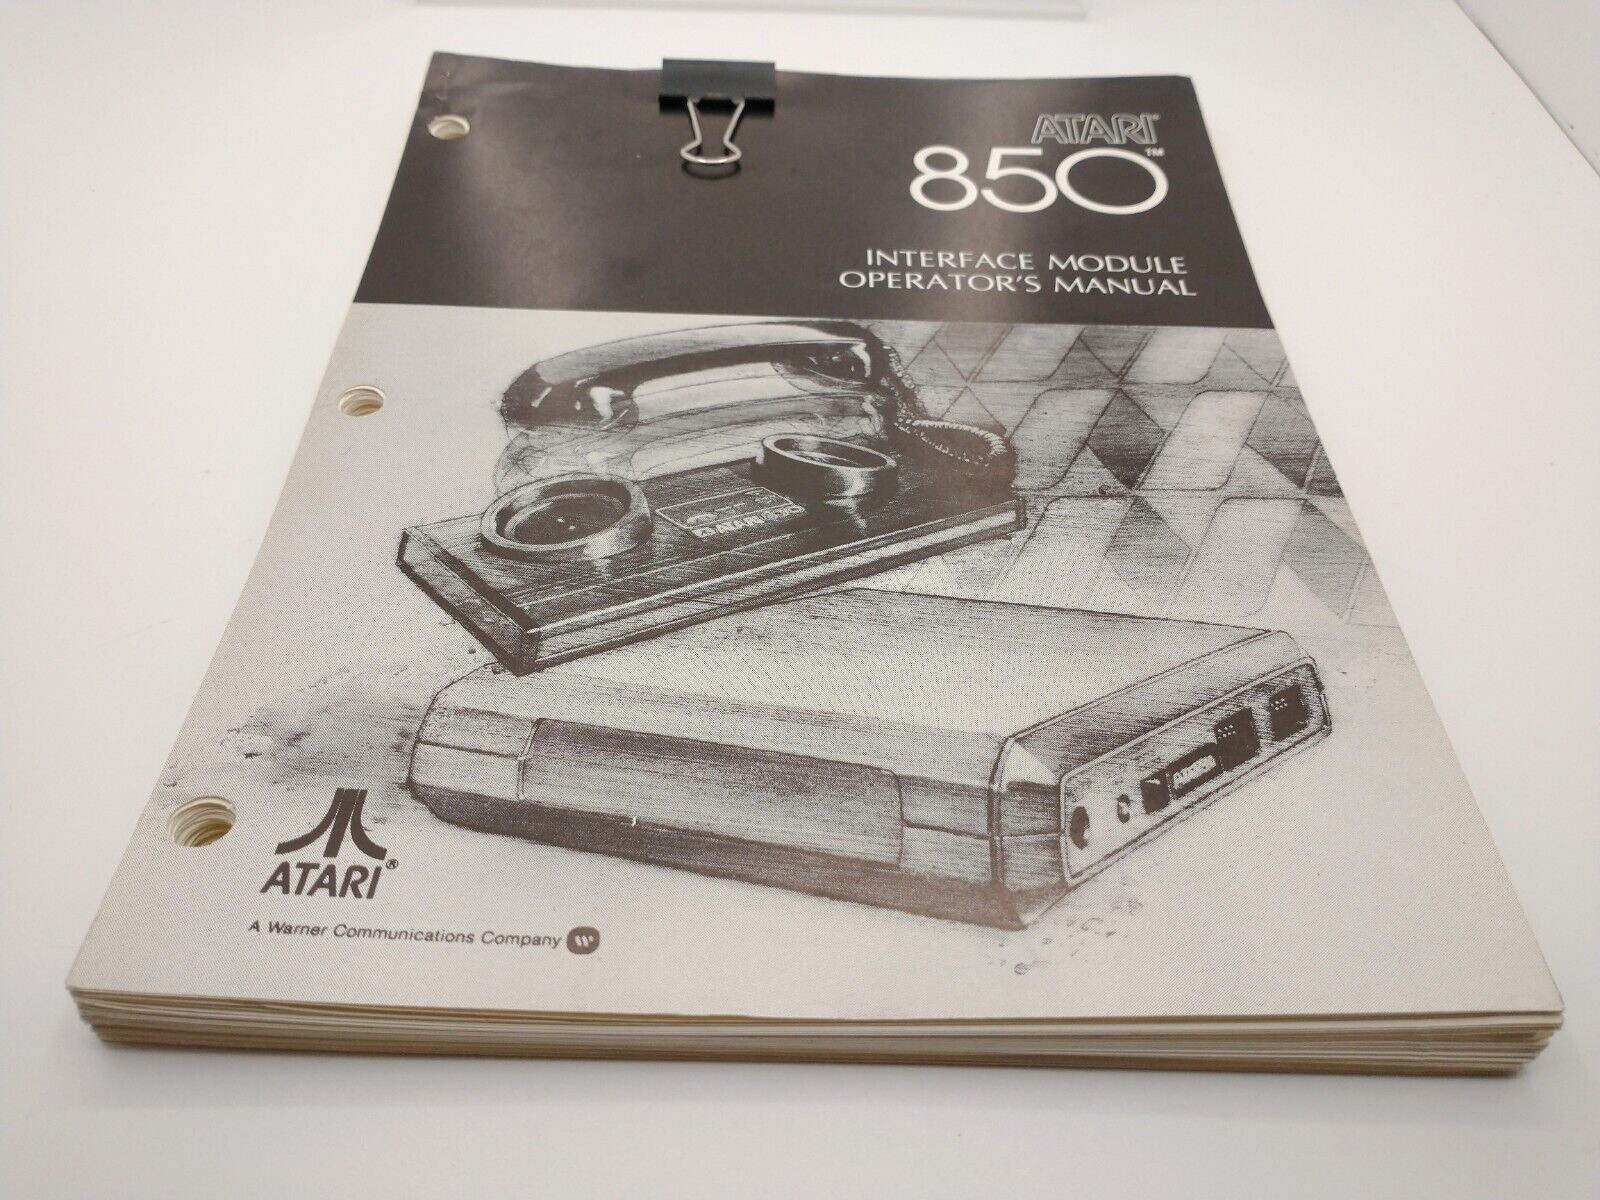 Atari 850 Interface Module Operator's Manual